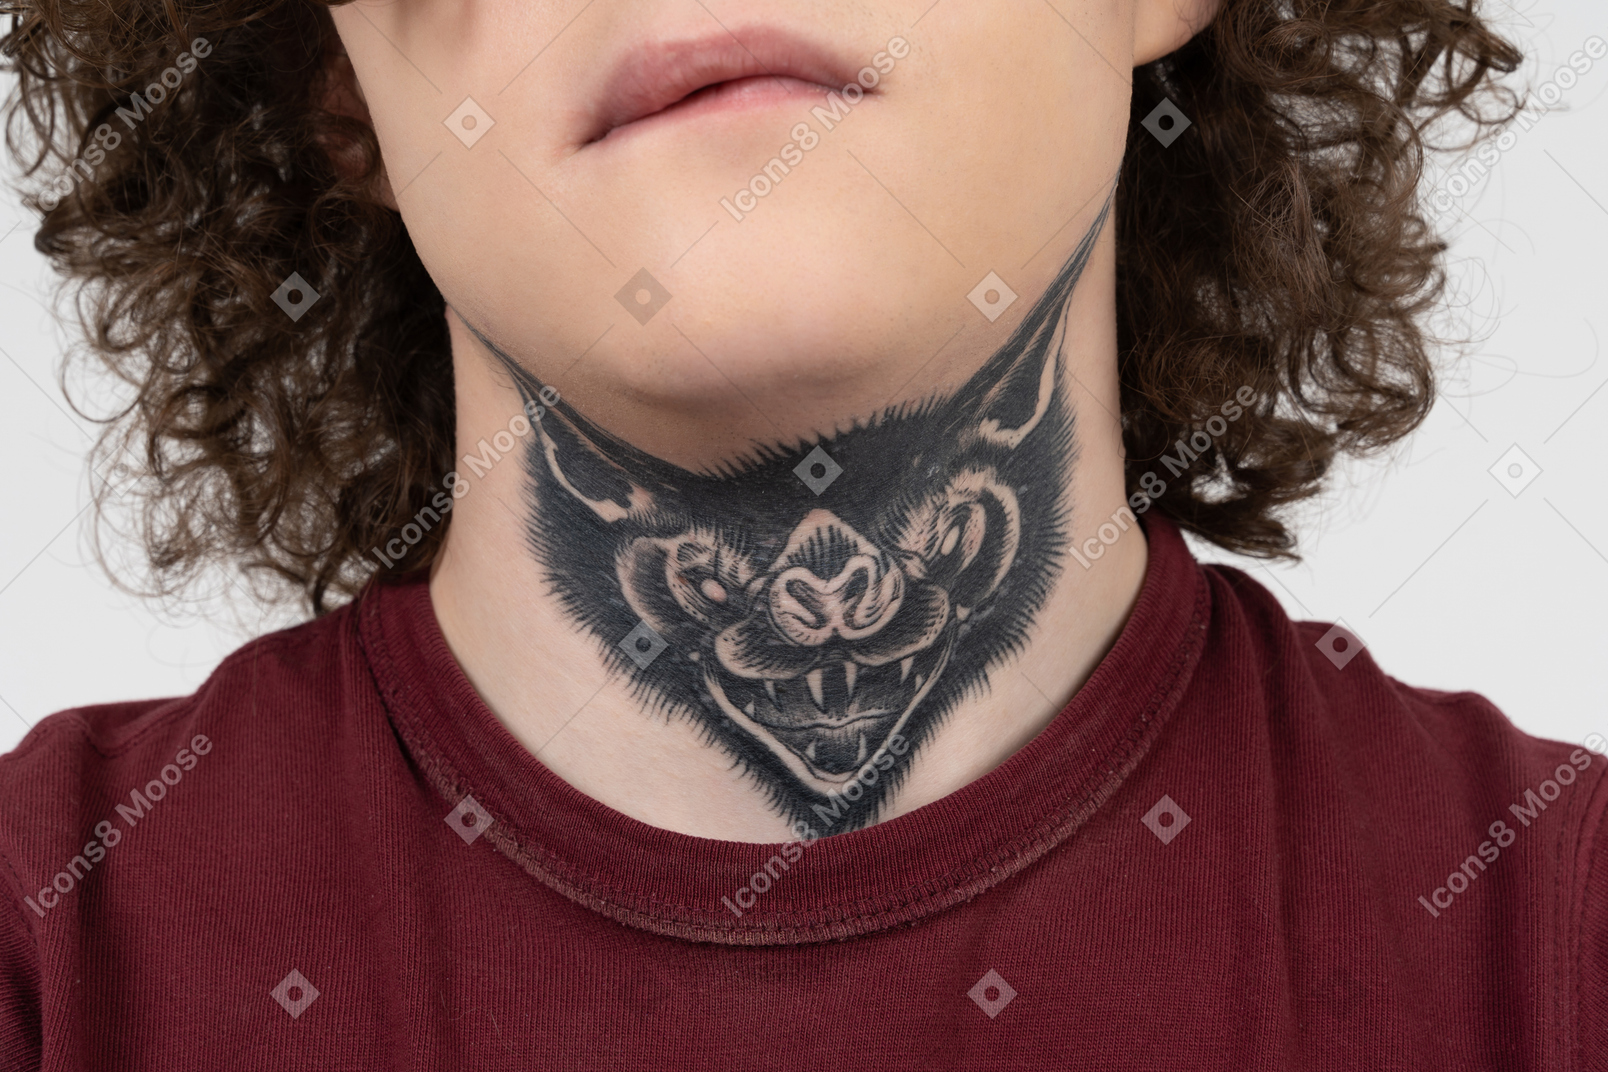 Adolescente morena con tatuaje de un depredador en el cuello